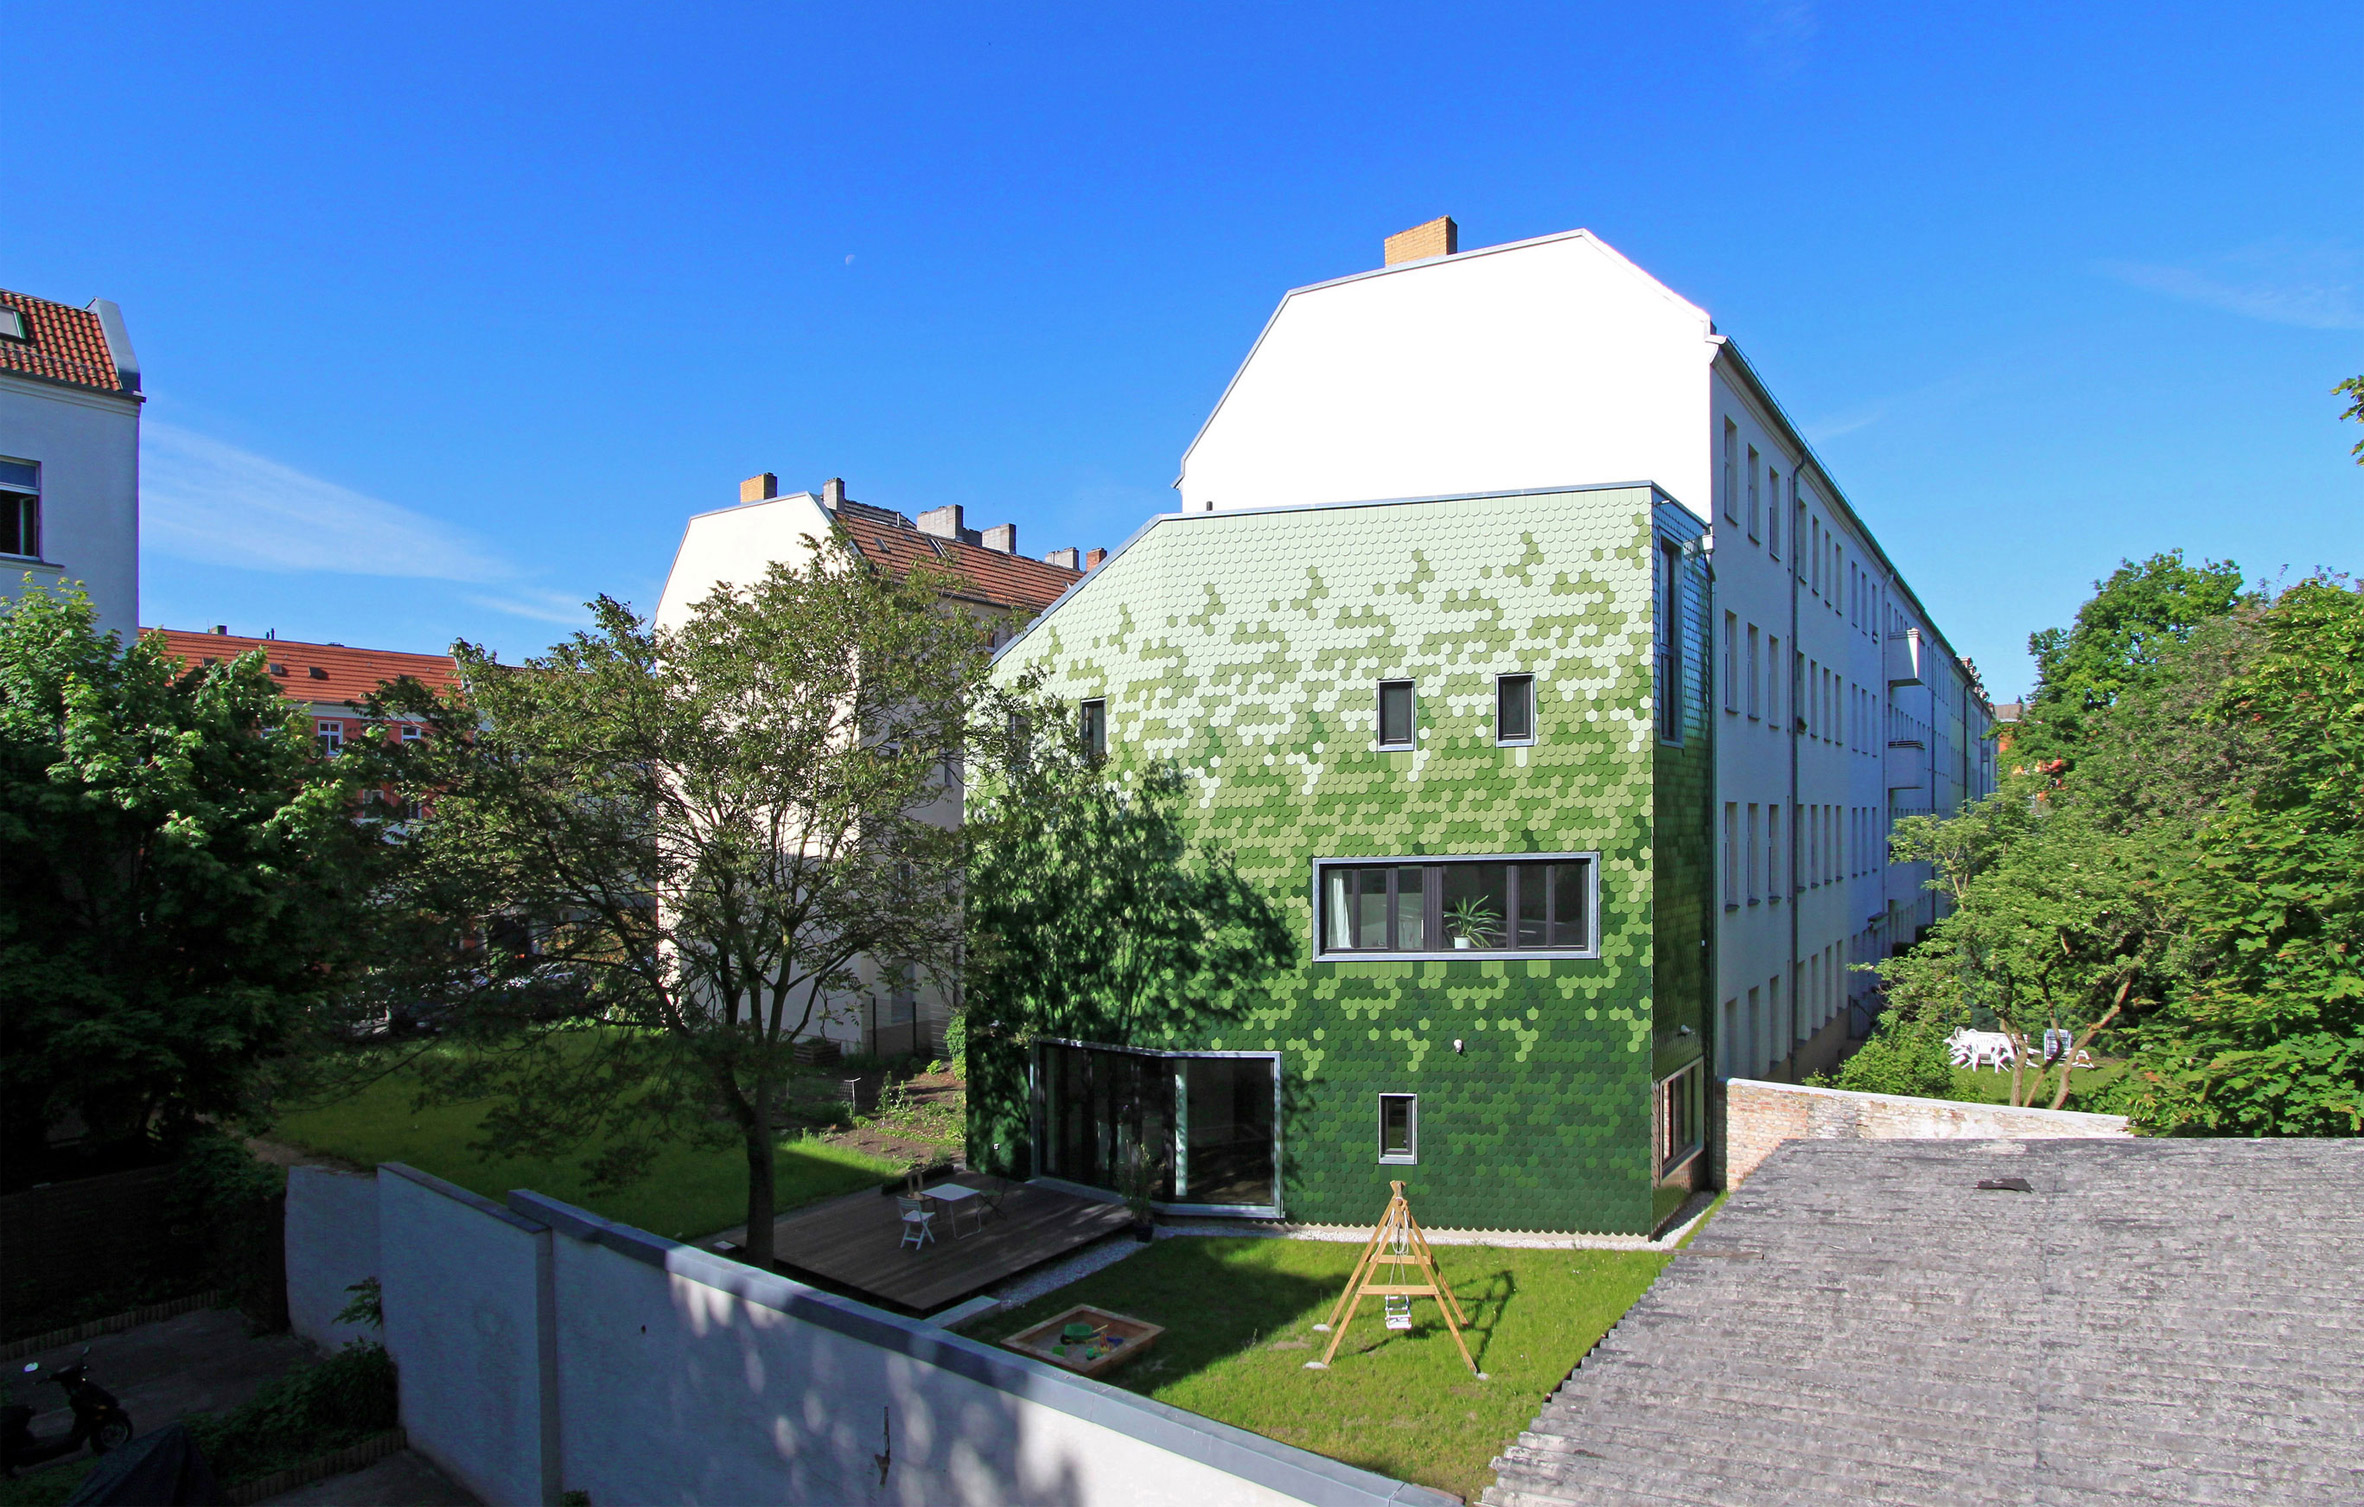 schuppen-family-house-brandt-simon-architekten-berlin-germany-coloured-tile-facade_dezeen_2364_col_10